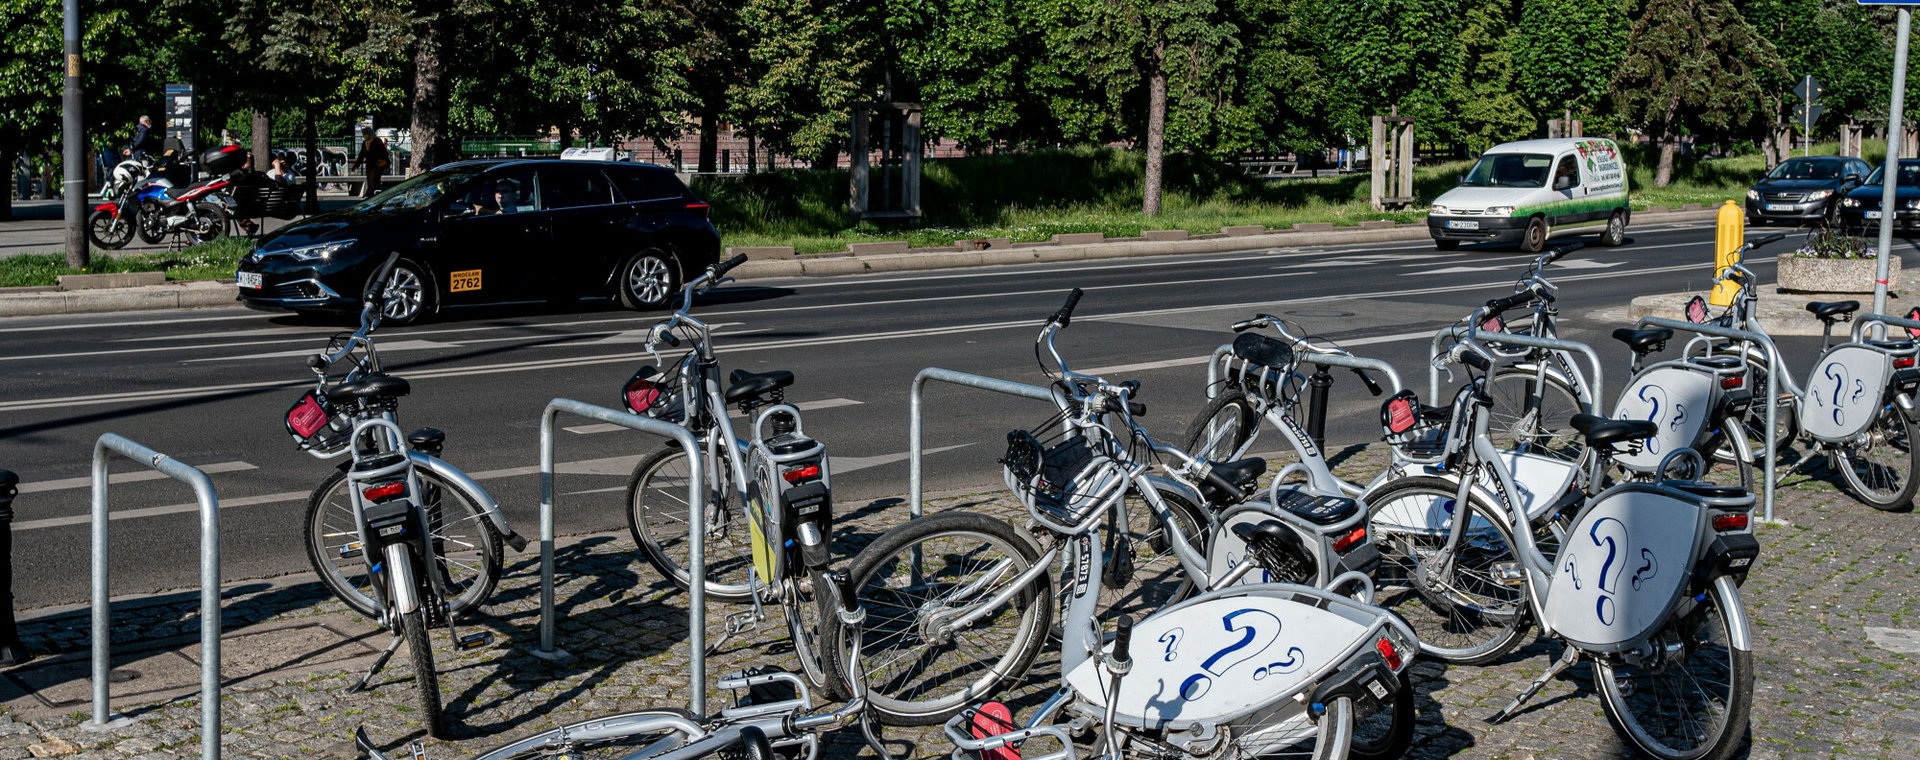 Spółka Nextbike oferująca rowery miejskie walczy o wyjście z tarapatów.